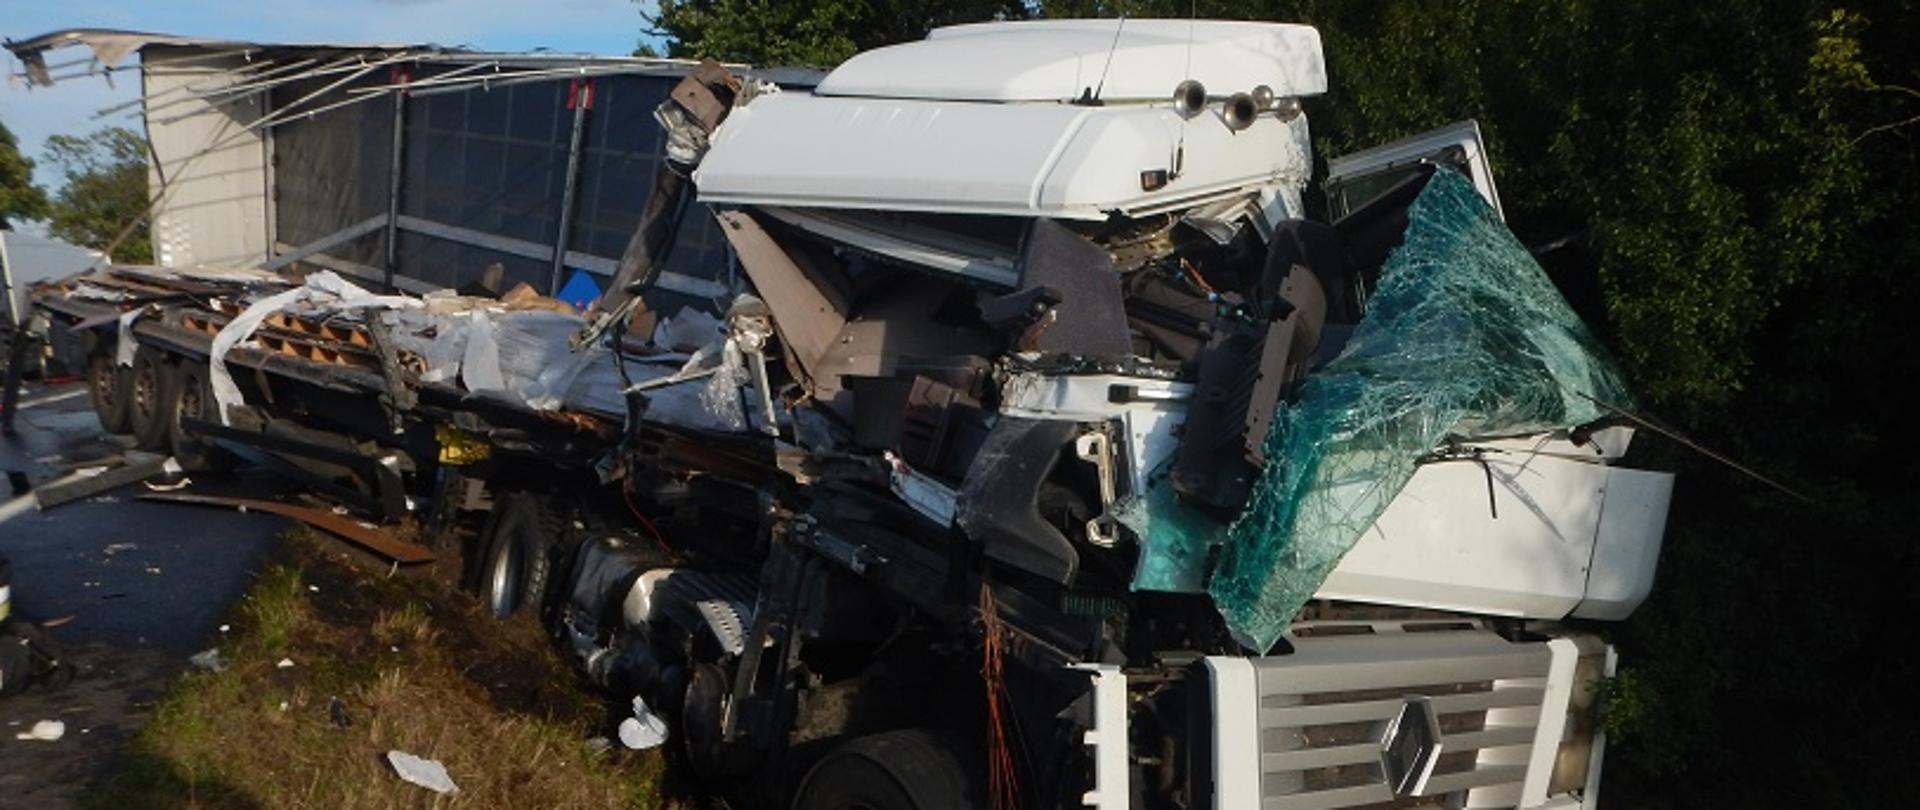 Zdjęcie przedstawia samochód ciężarowy, uszkodzony z prawej strony, który po zderzenie z innym samochodem ciężarowym znajduje się w rowie.